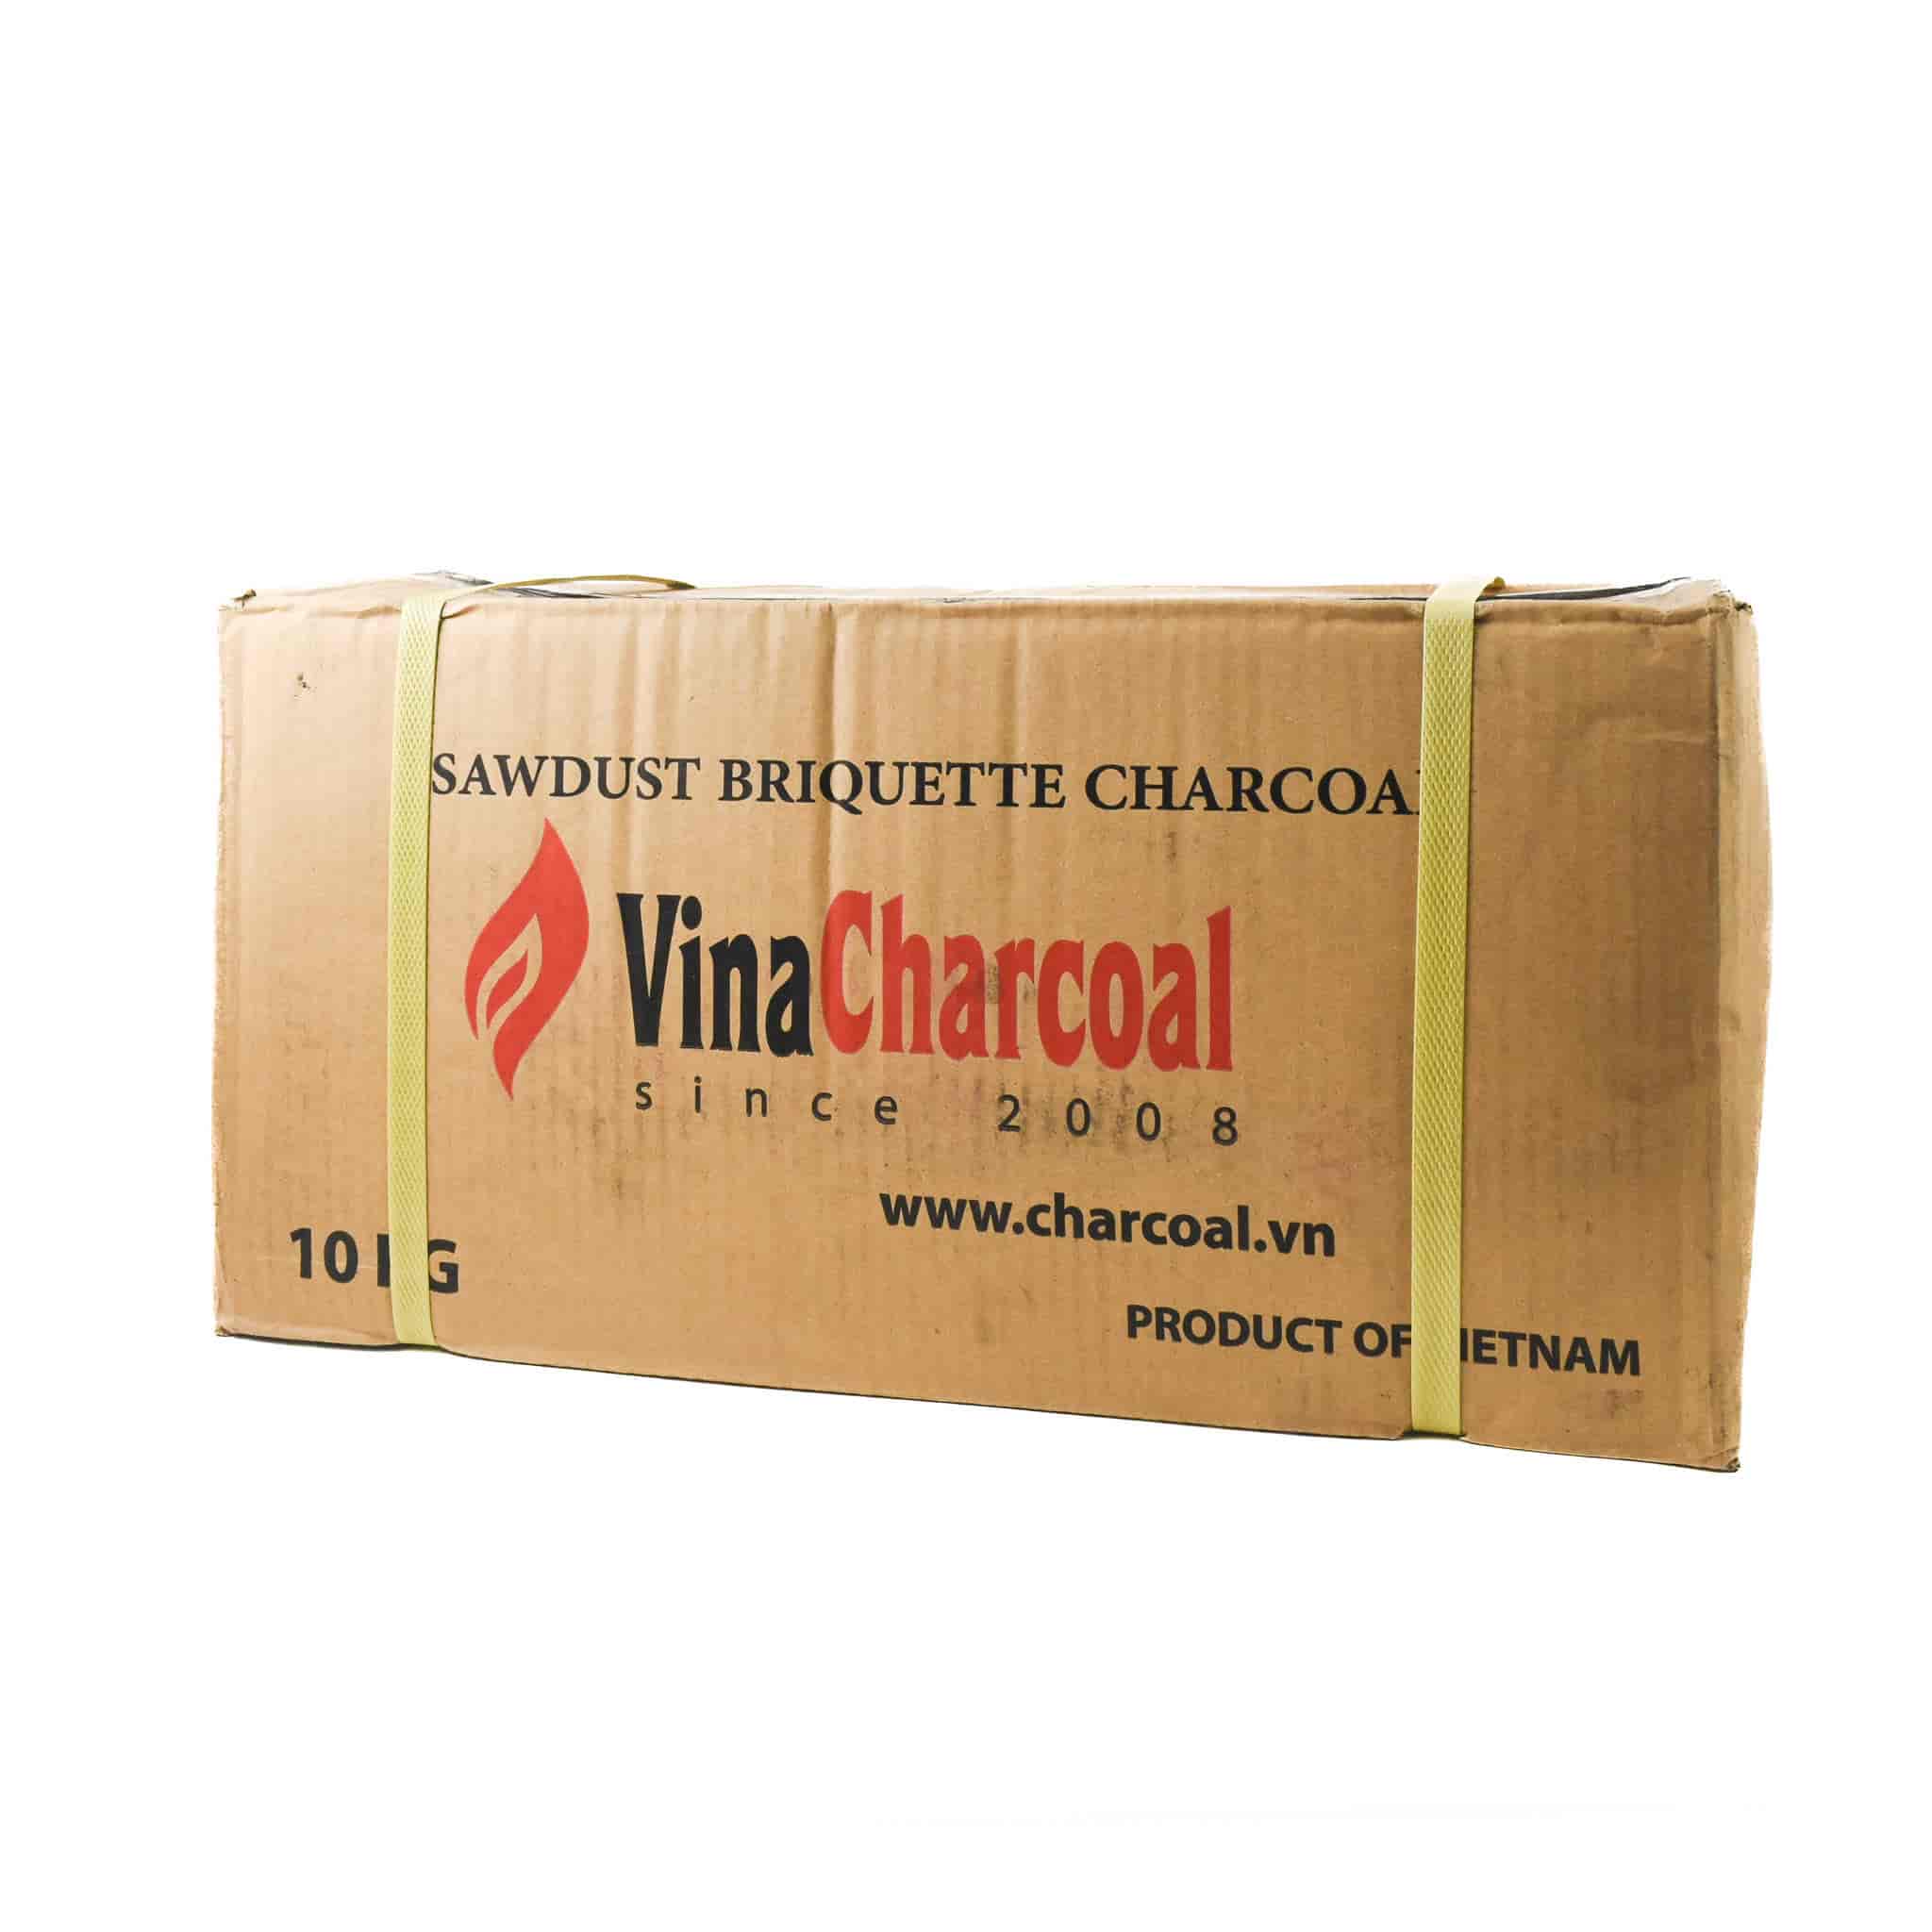 Sawdust Briquette Charcoal, 10kg